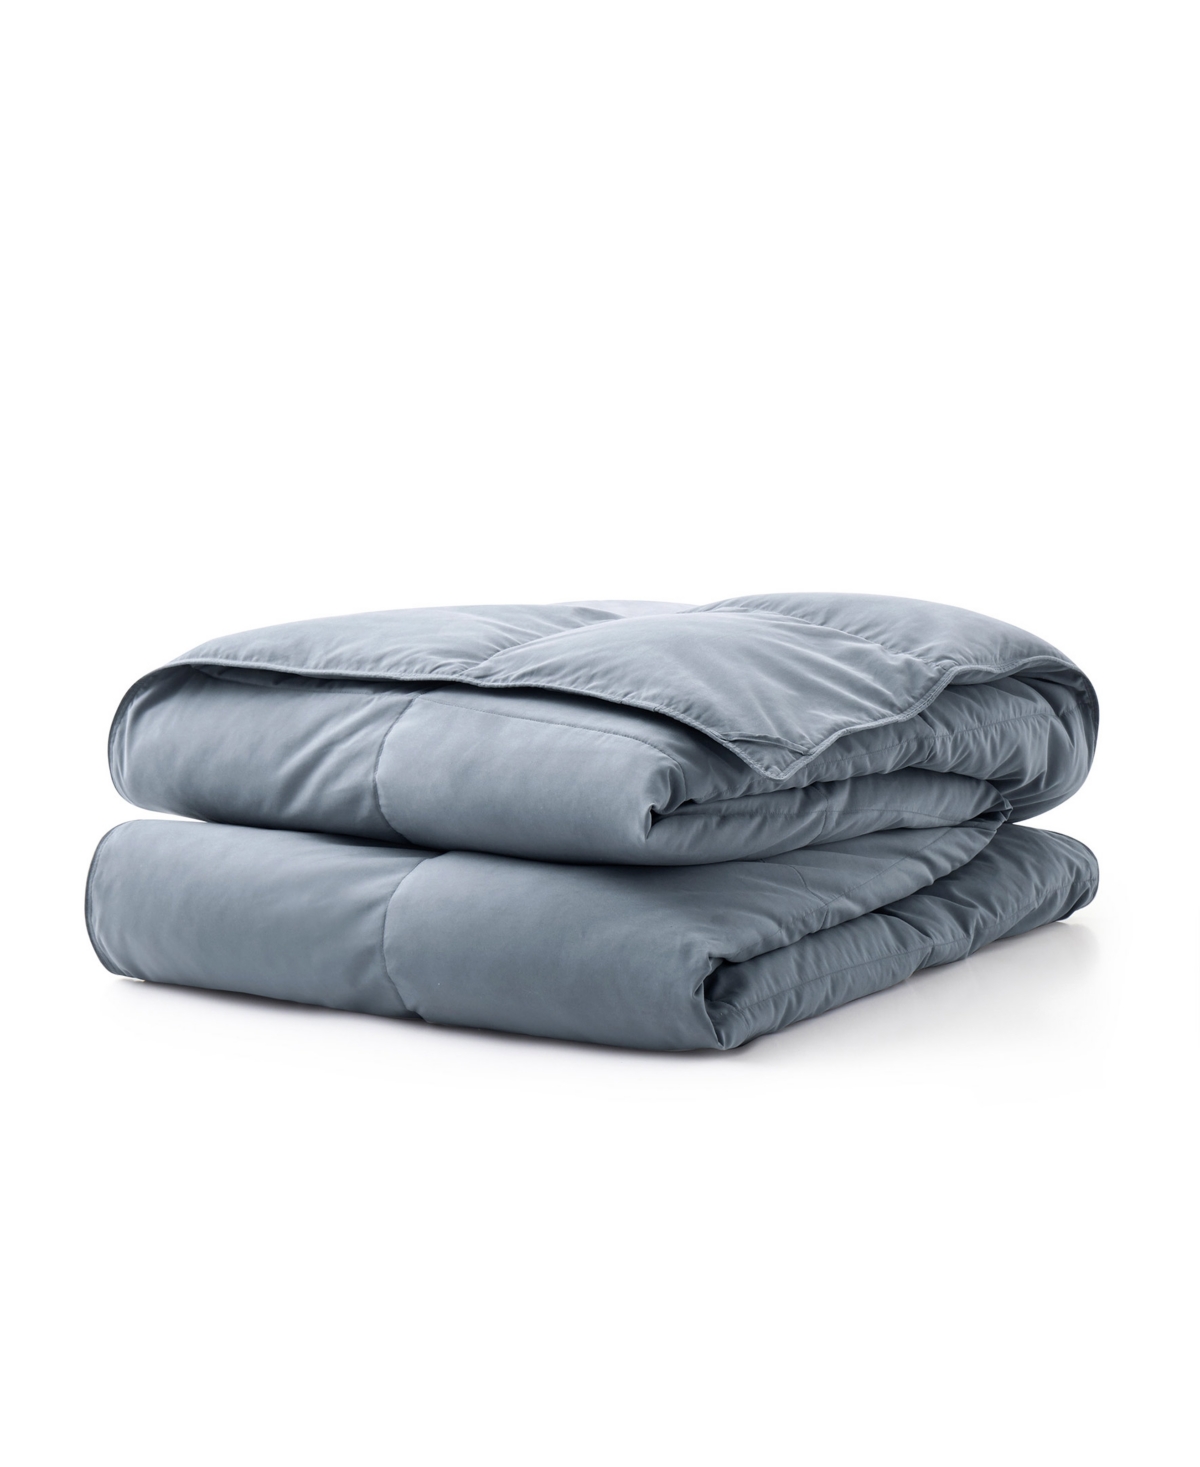 Unikome All Season 300 Thread Count Cotton Goose Down Fiber Comforter, Twin In Gray